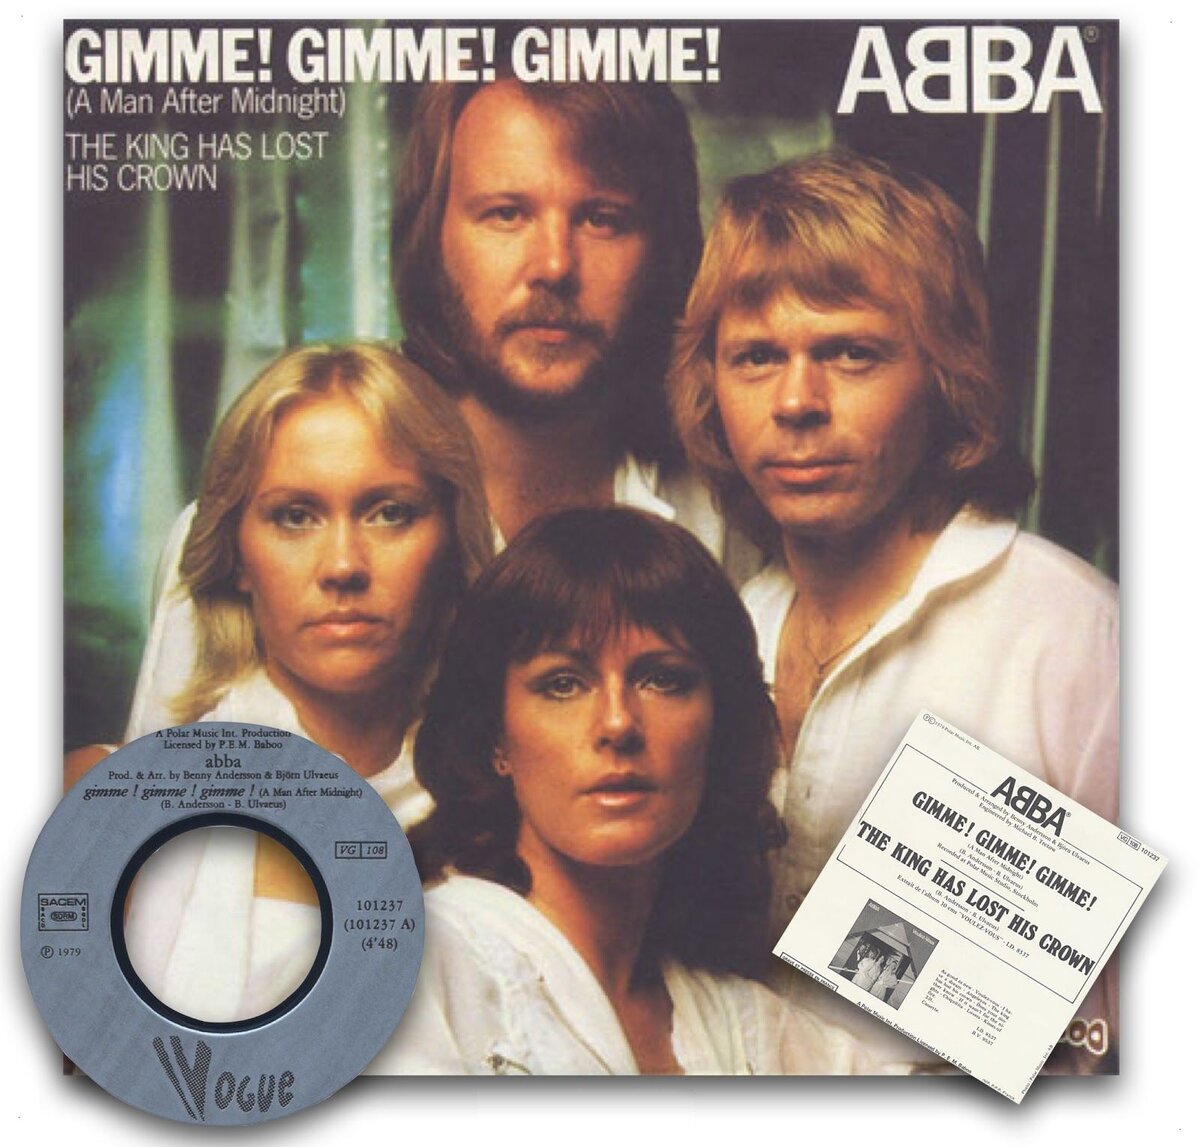 ABBA Gimme обложка. ABBA A man after Midnight. ABBA Gimme Gimme Gimme. ABBA - Gimme! Gimme! Gimme! (A man after Midnight). Песня abba gimme gimme gimme